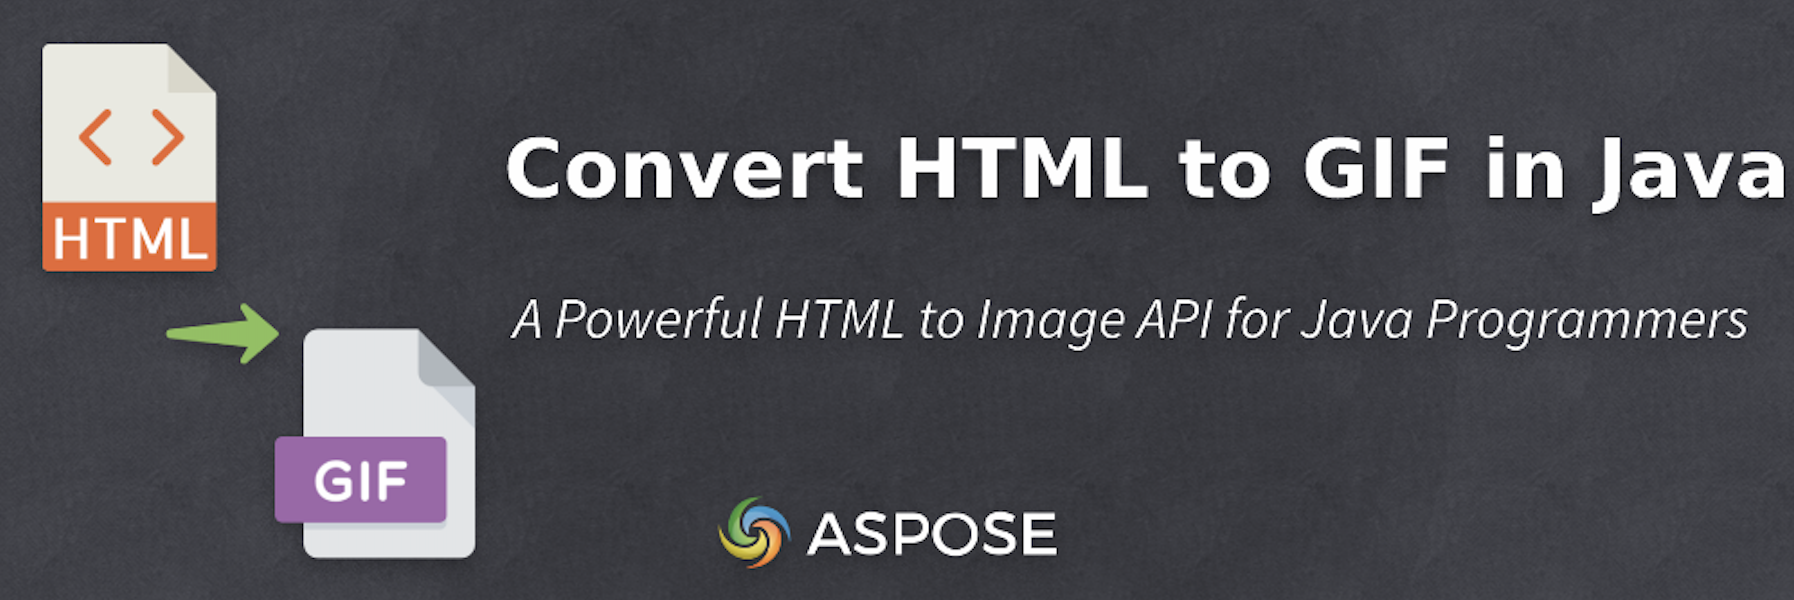 Converti HTML in GIF in Java in modo programmatico